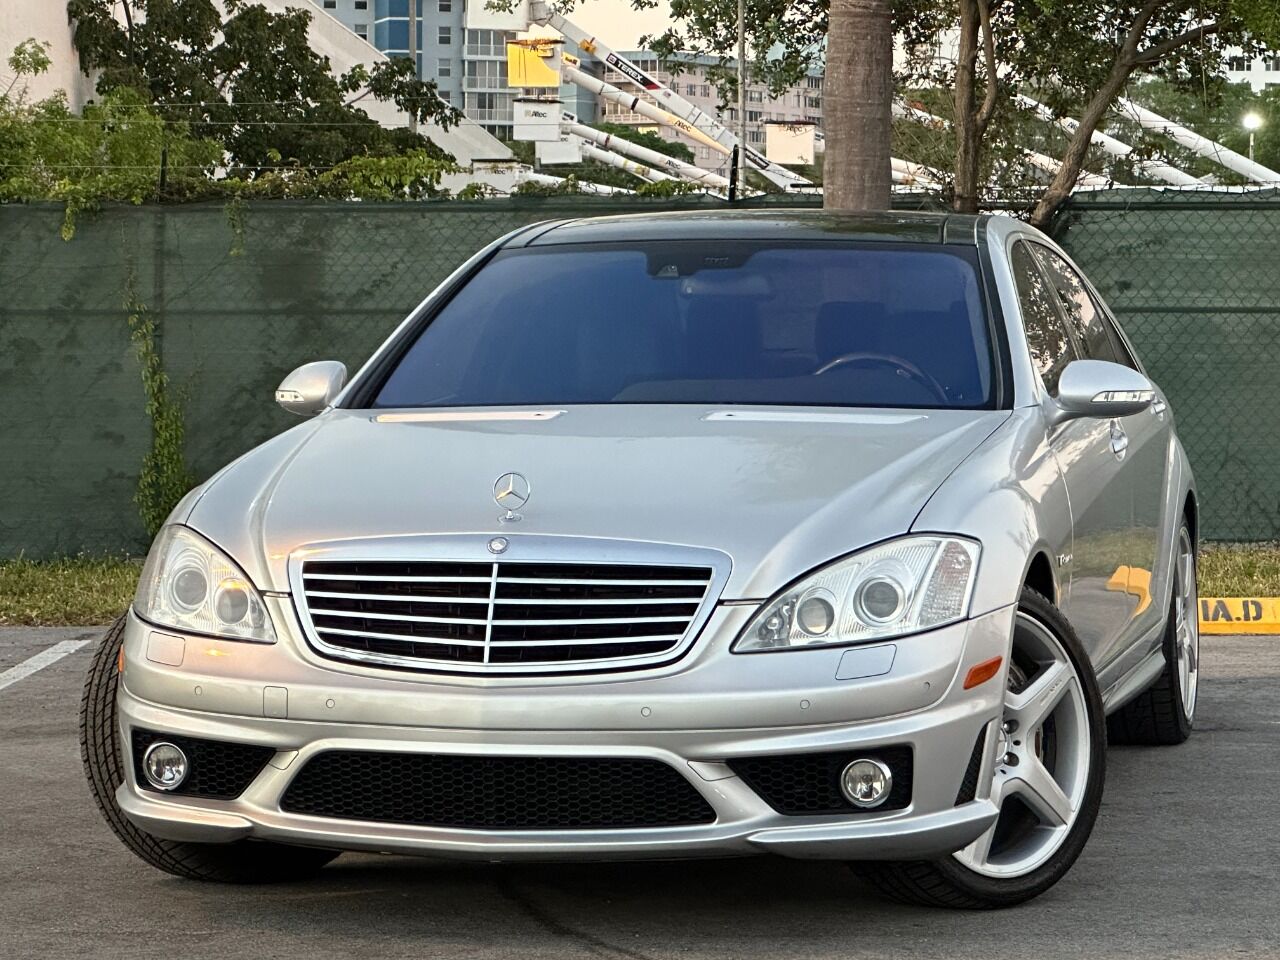 2007 Mercedes-Benz S-Class Sedan - $27,900